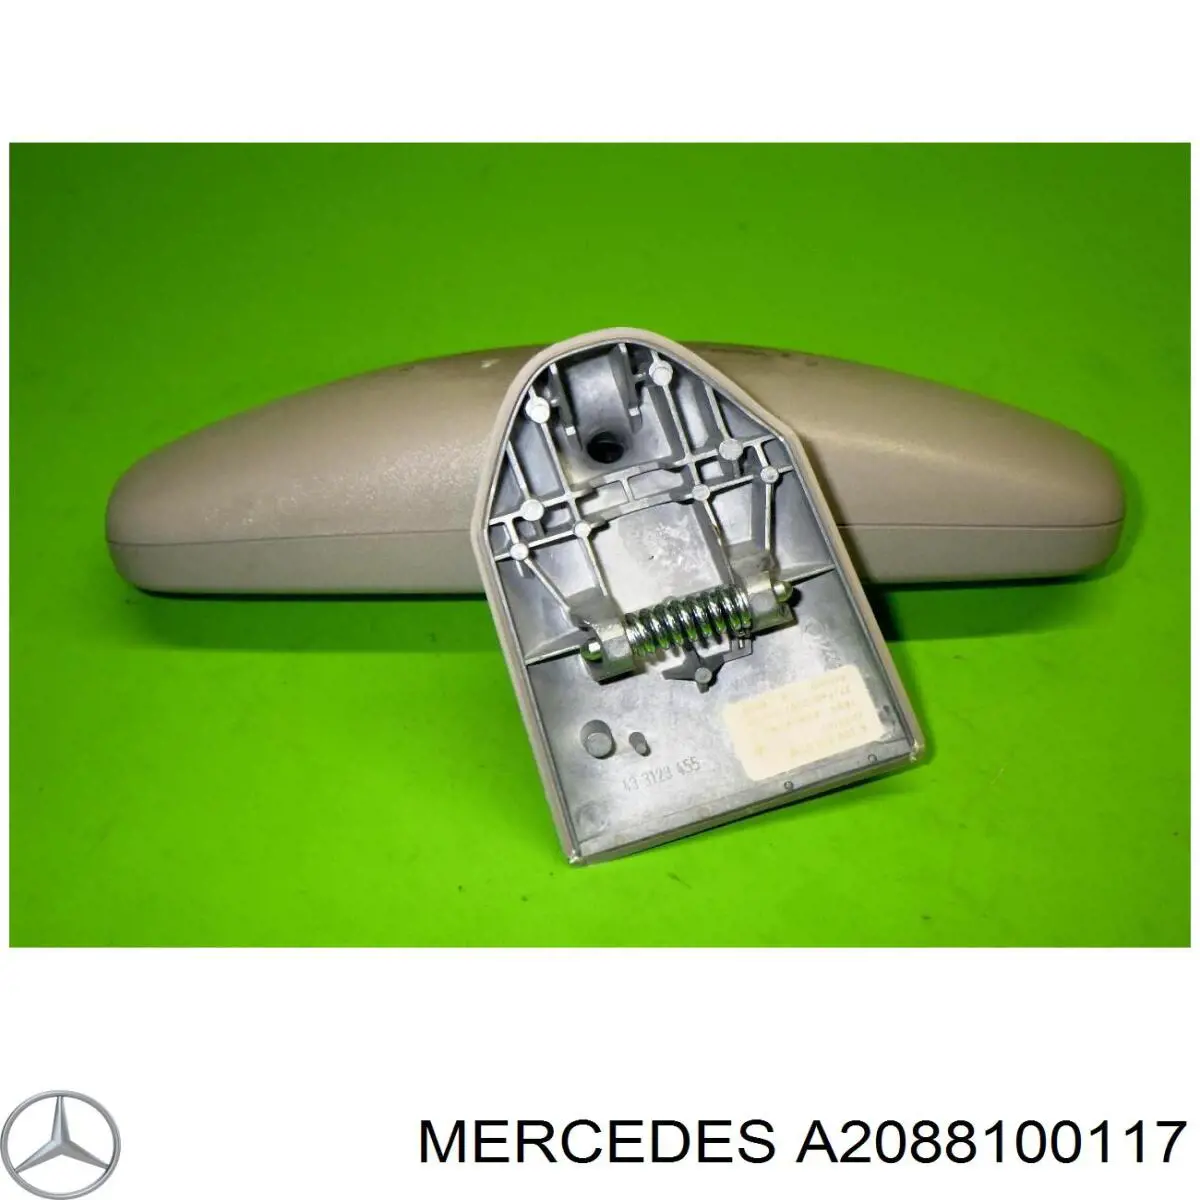 A2088100117 Mercedes retrovisor interior